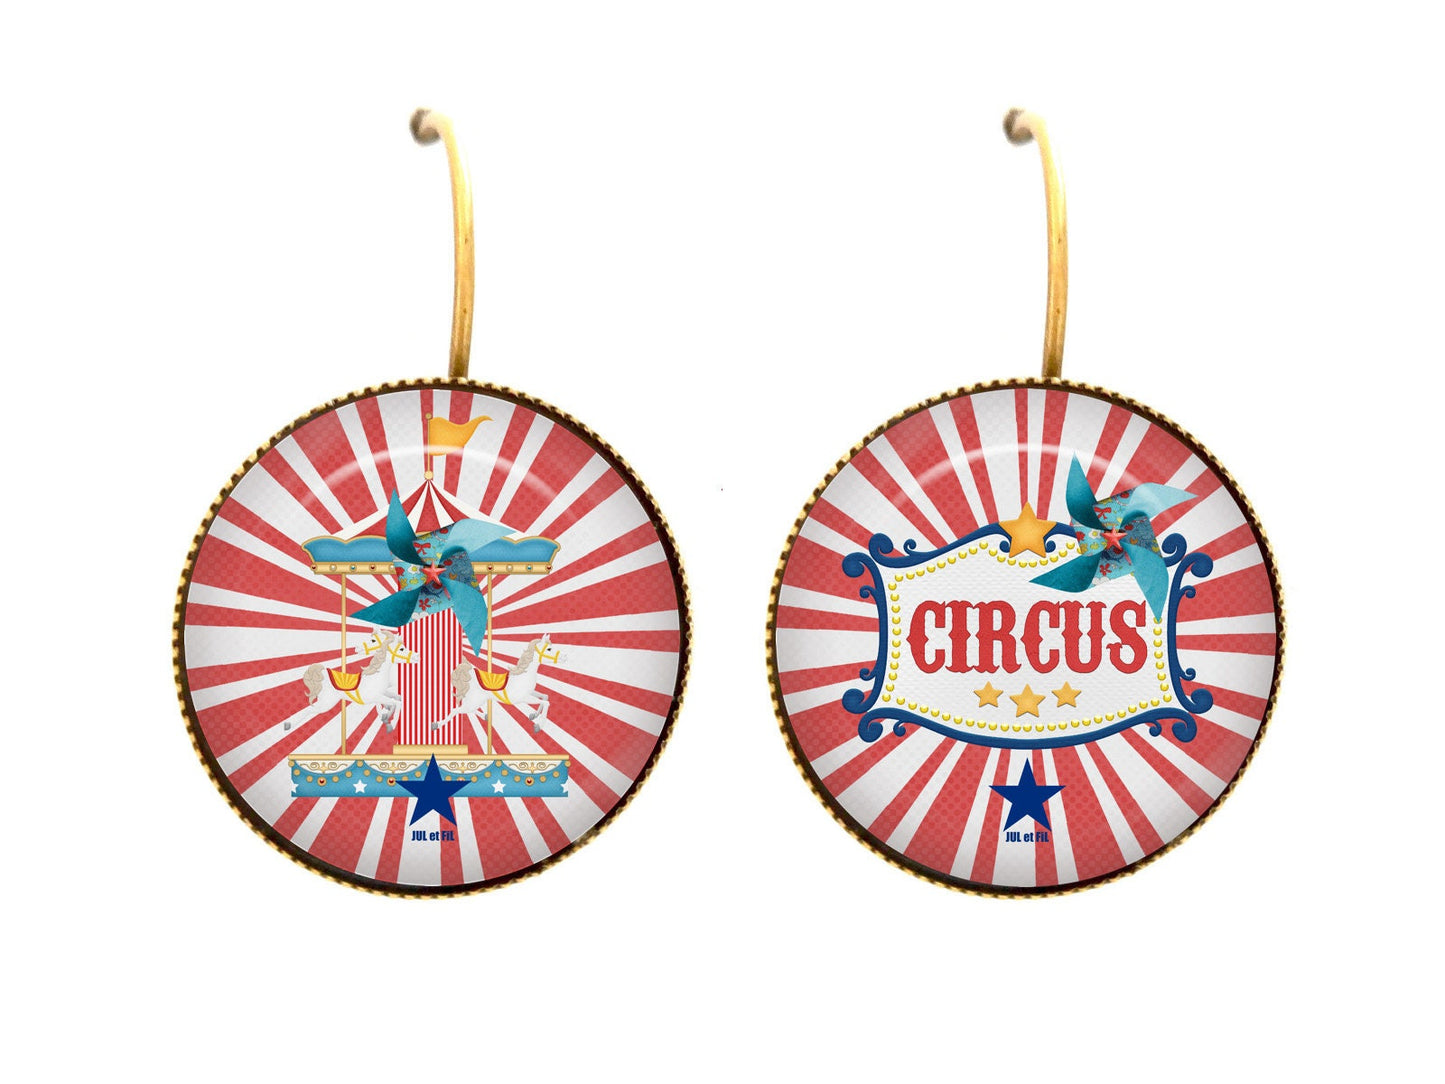 JUL et FIL circus merry-go-round fantasy postcard